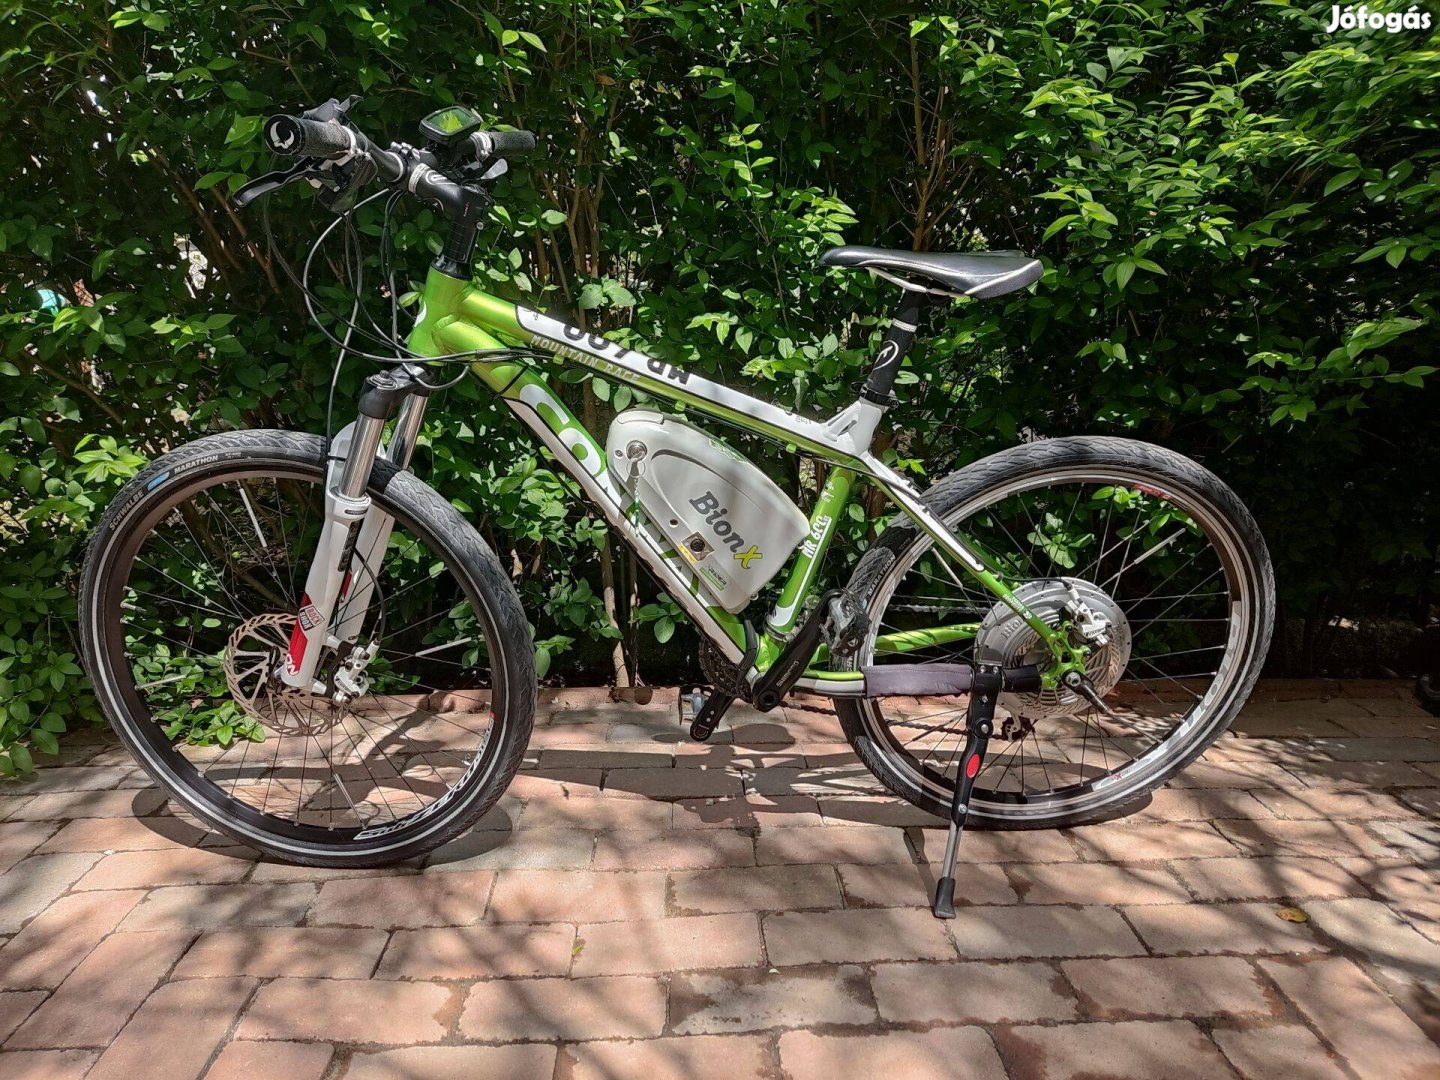 Eladó Conway Q-MR 600 SE elektromos kerékpár